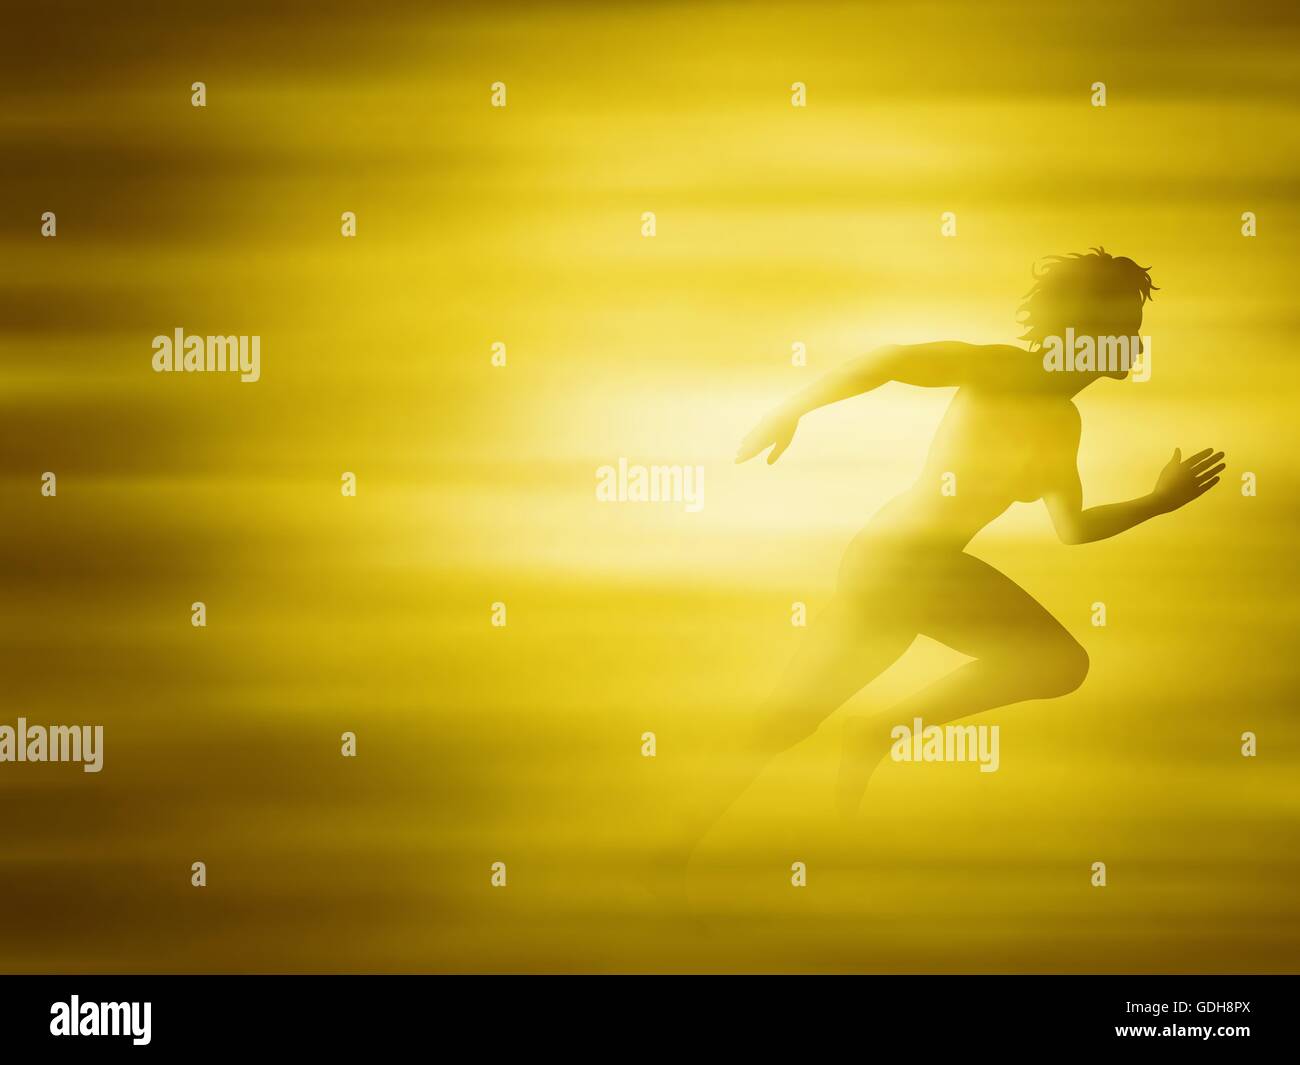 Illustration vectorielle modifiable d'une femme un sprint dans un flou d'or créé à l'aide de filets de dégradé Illustration de Vecteur